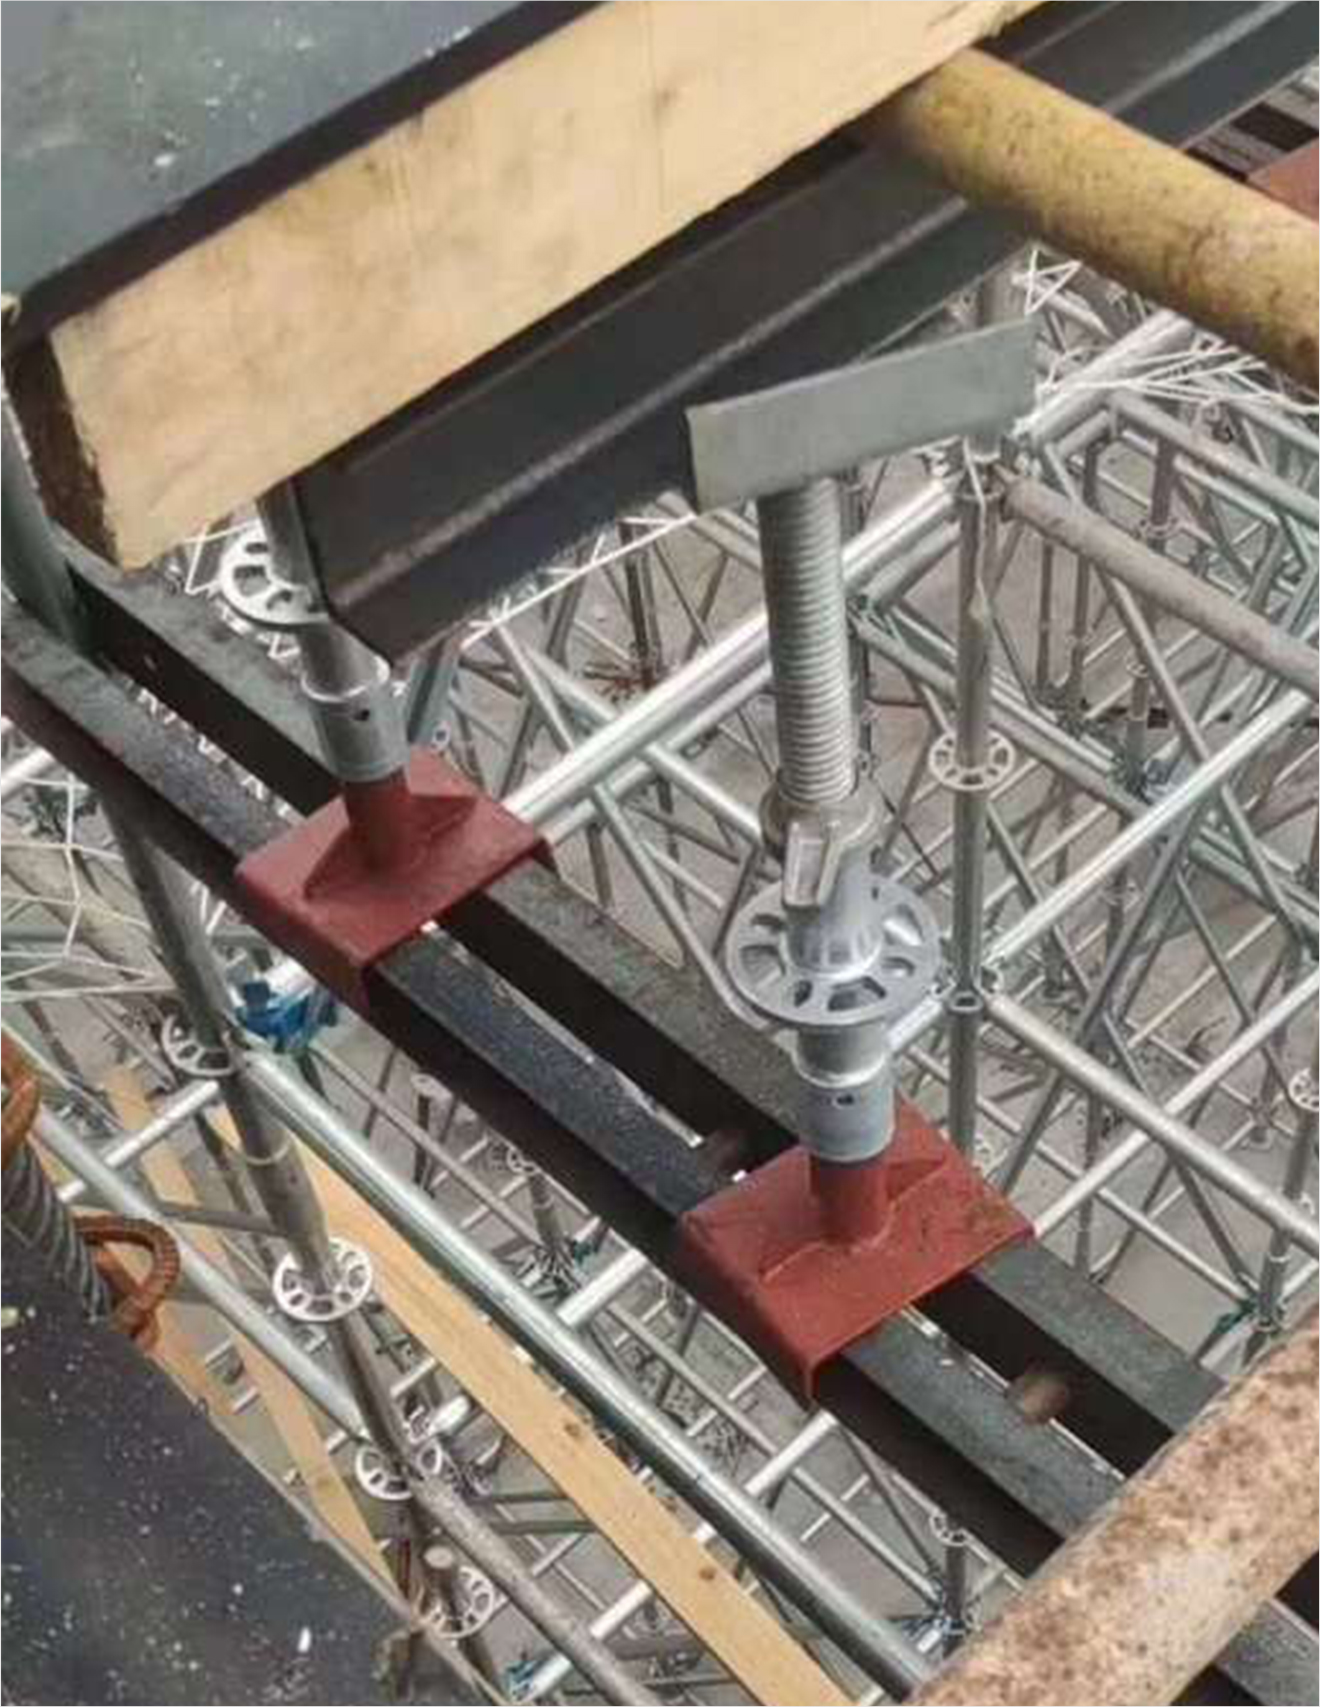 钢构公司顺利完成45米超长吊车梁的制作与吊装-浙江久立钢构工程有限公司中文官网